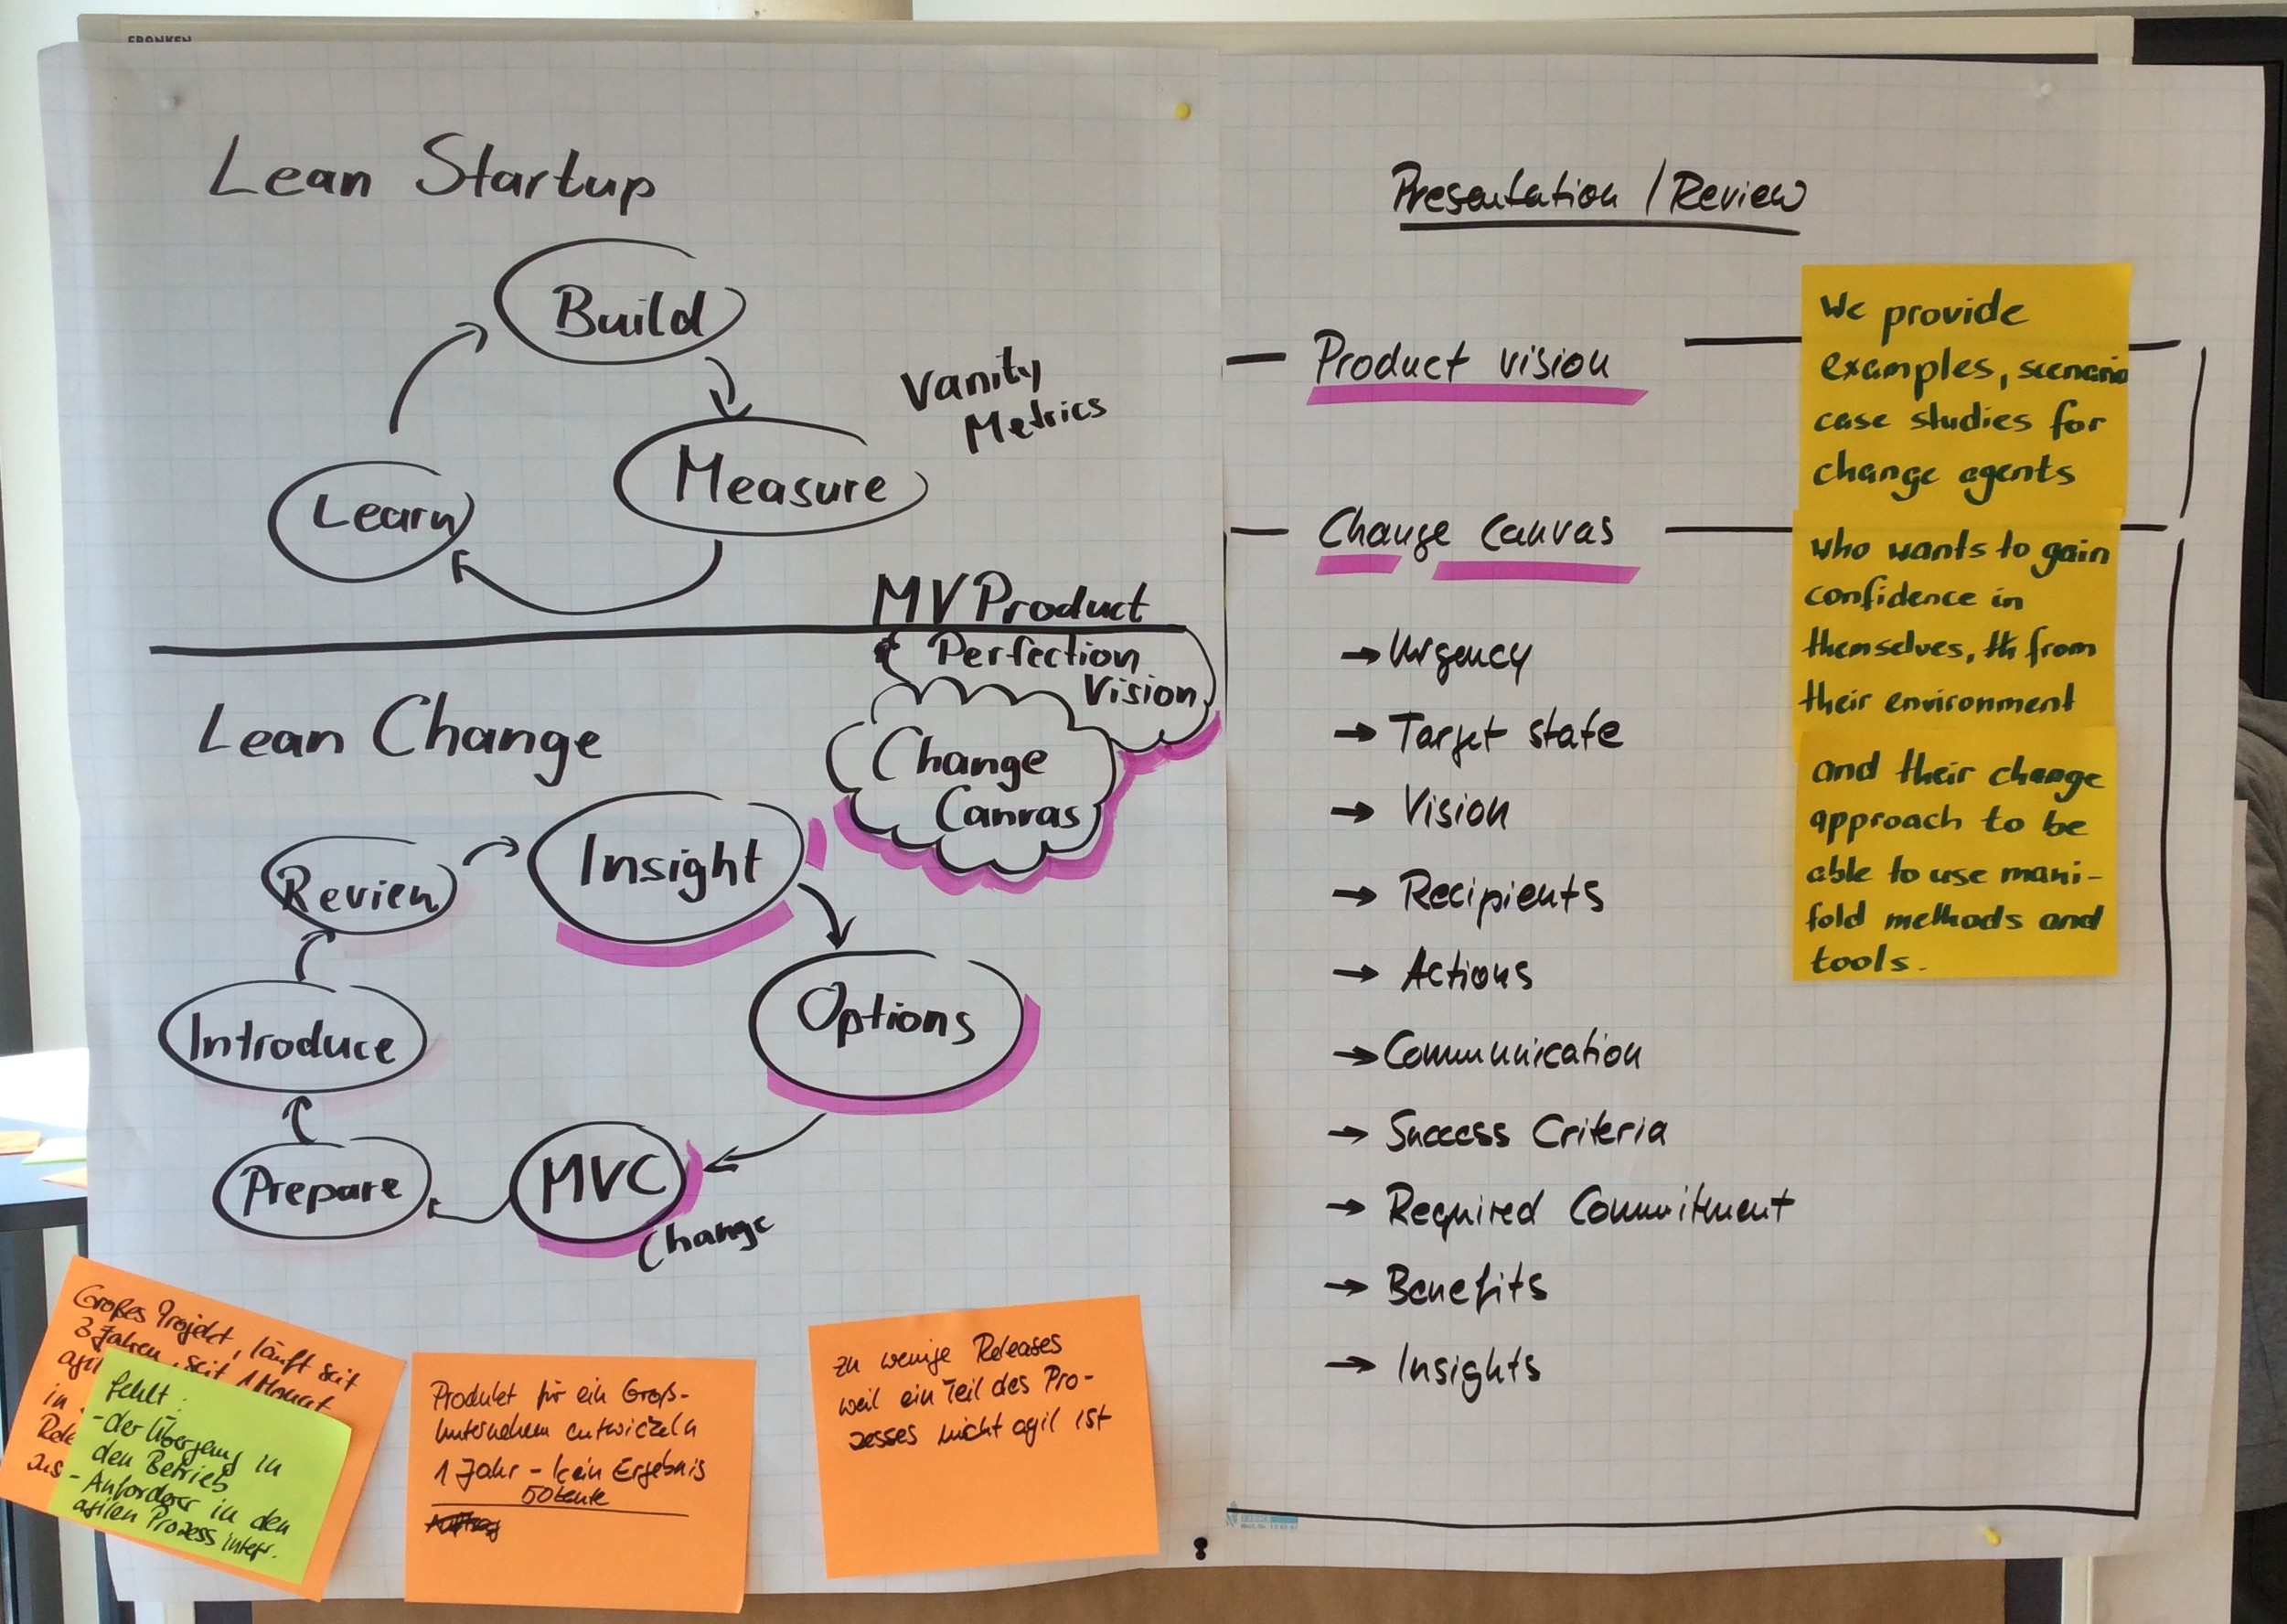 Plakat Lean Startup und Lean Change - die wichtigsten Kreisläufe werden erklärt